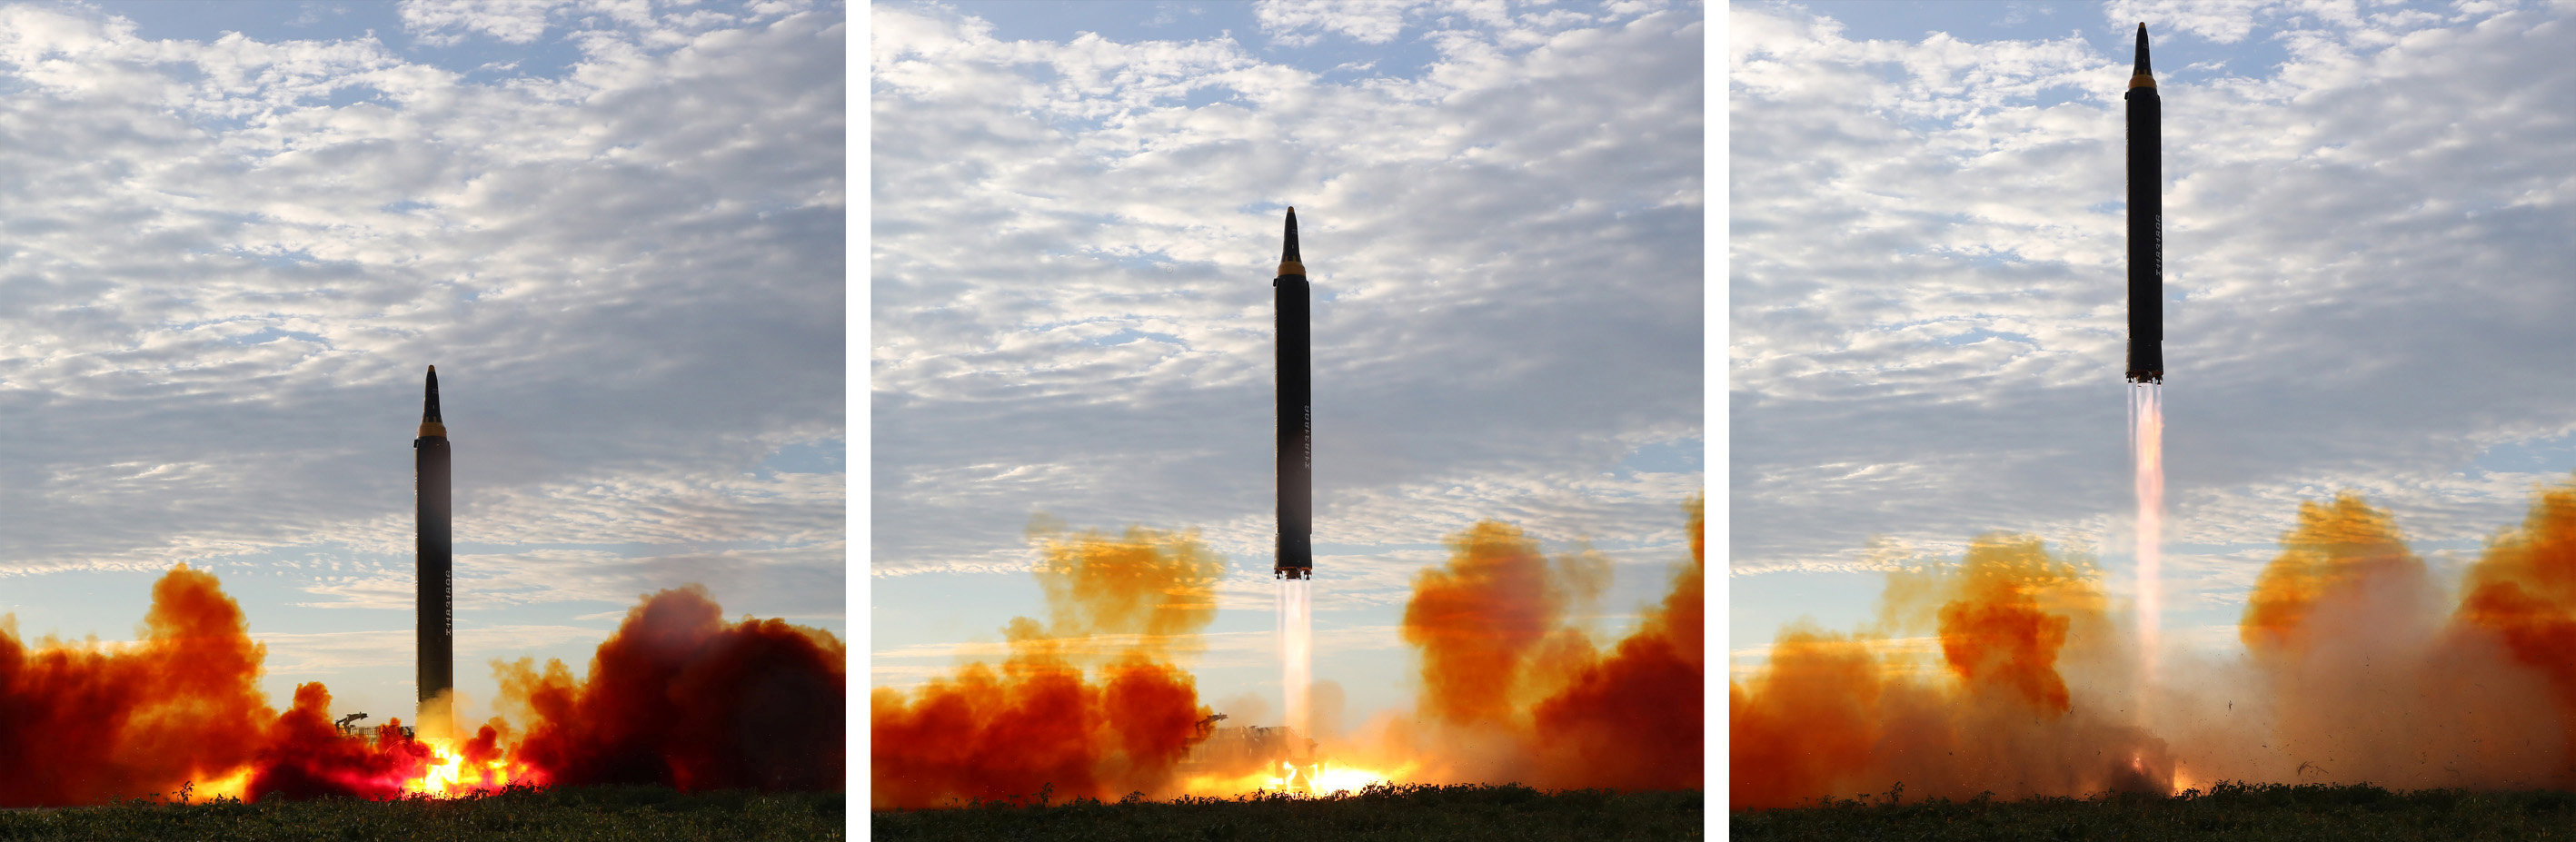 مراحل التجربة الصاروخية لكوريا الشمالية